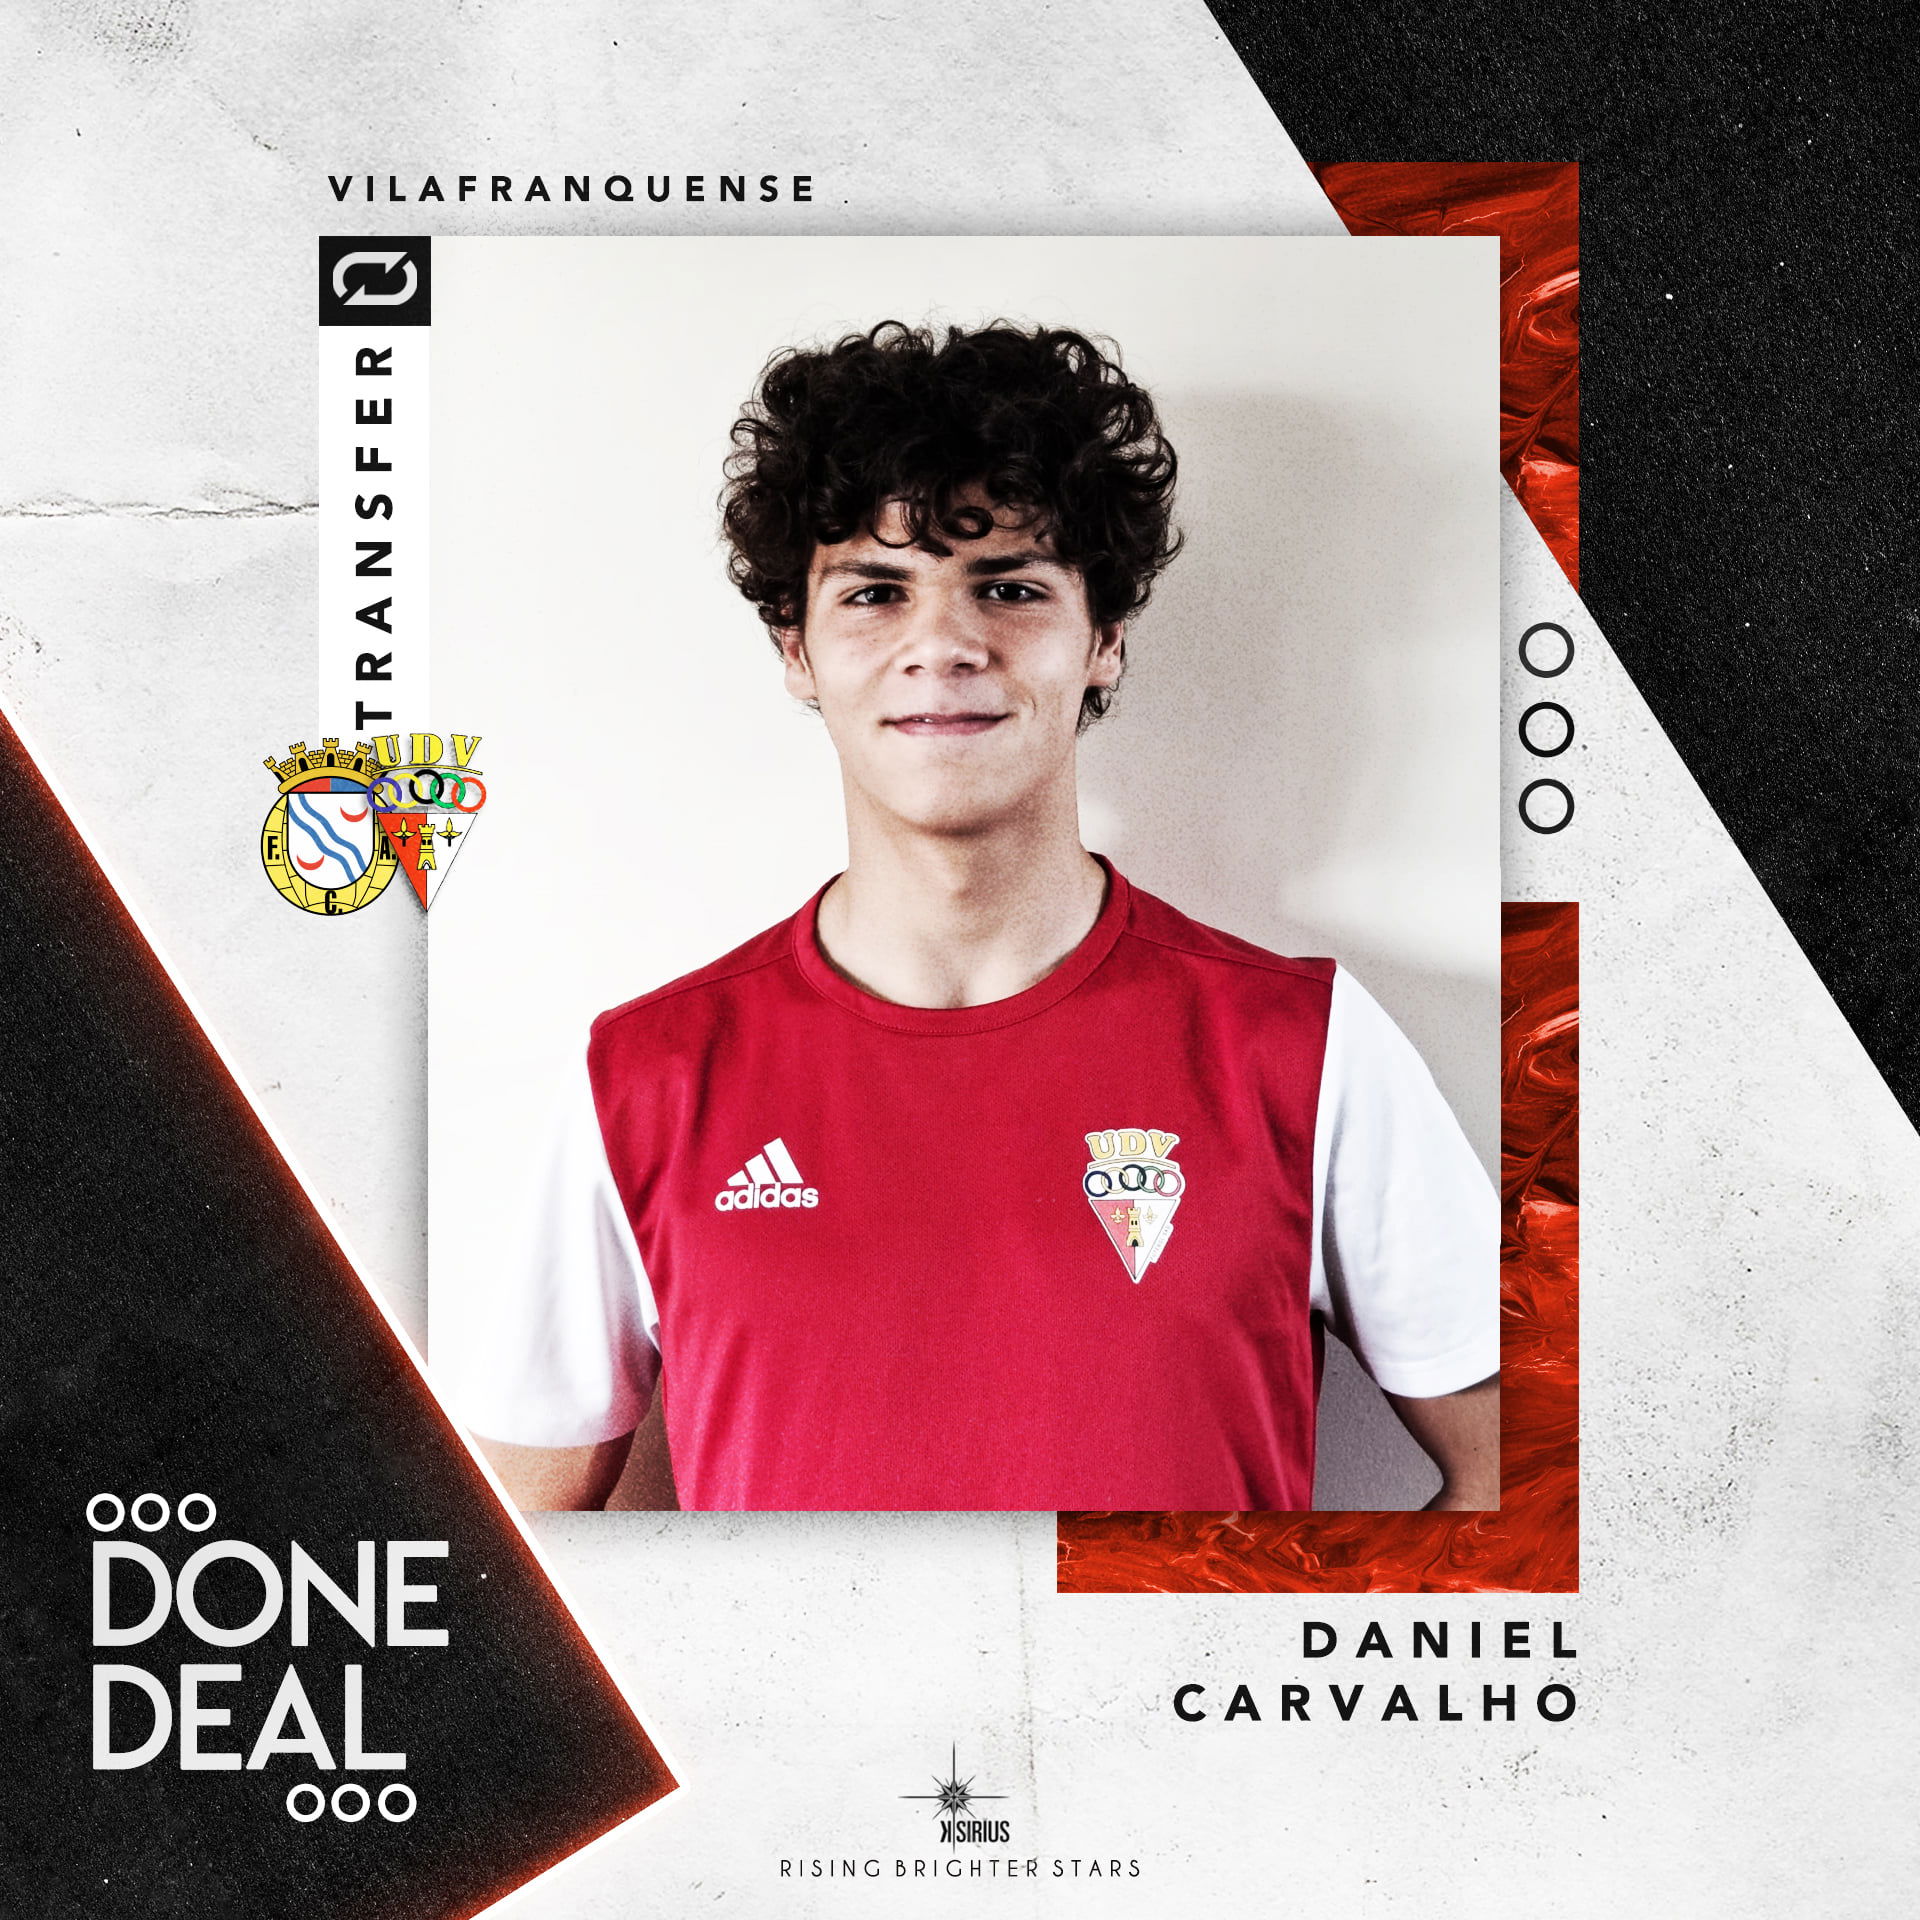 Signing: Daniel Carvalho with U.D. Vilafranquense